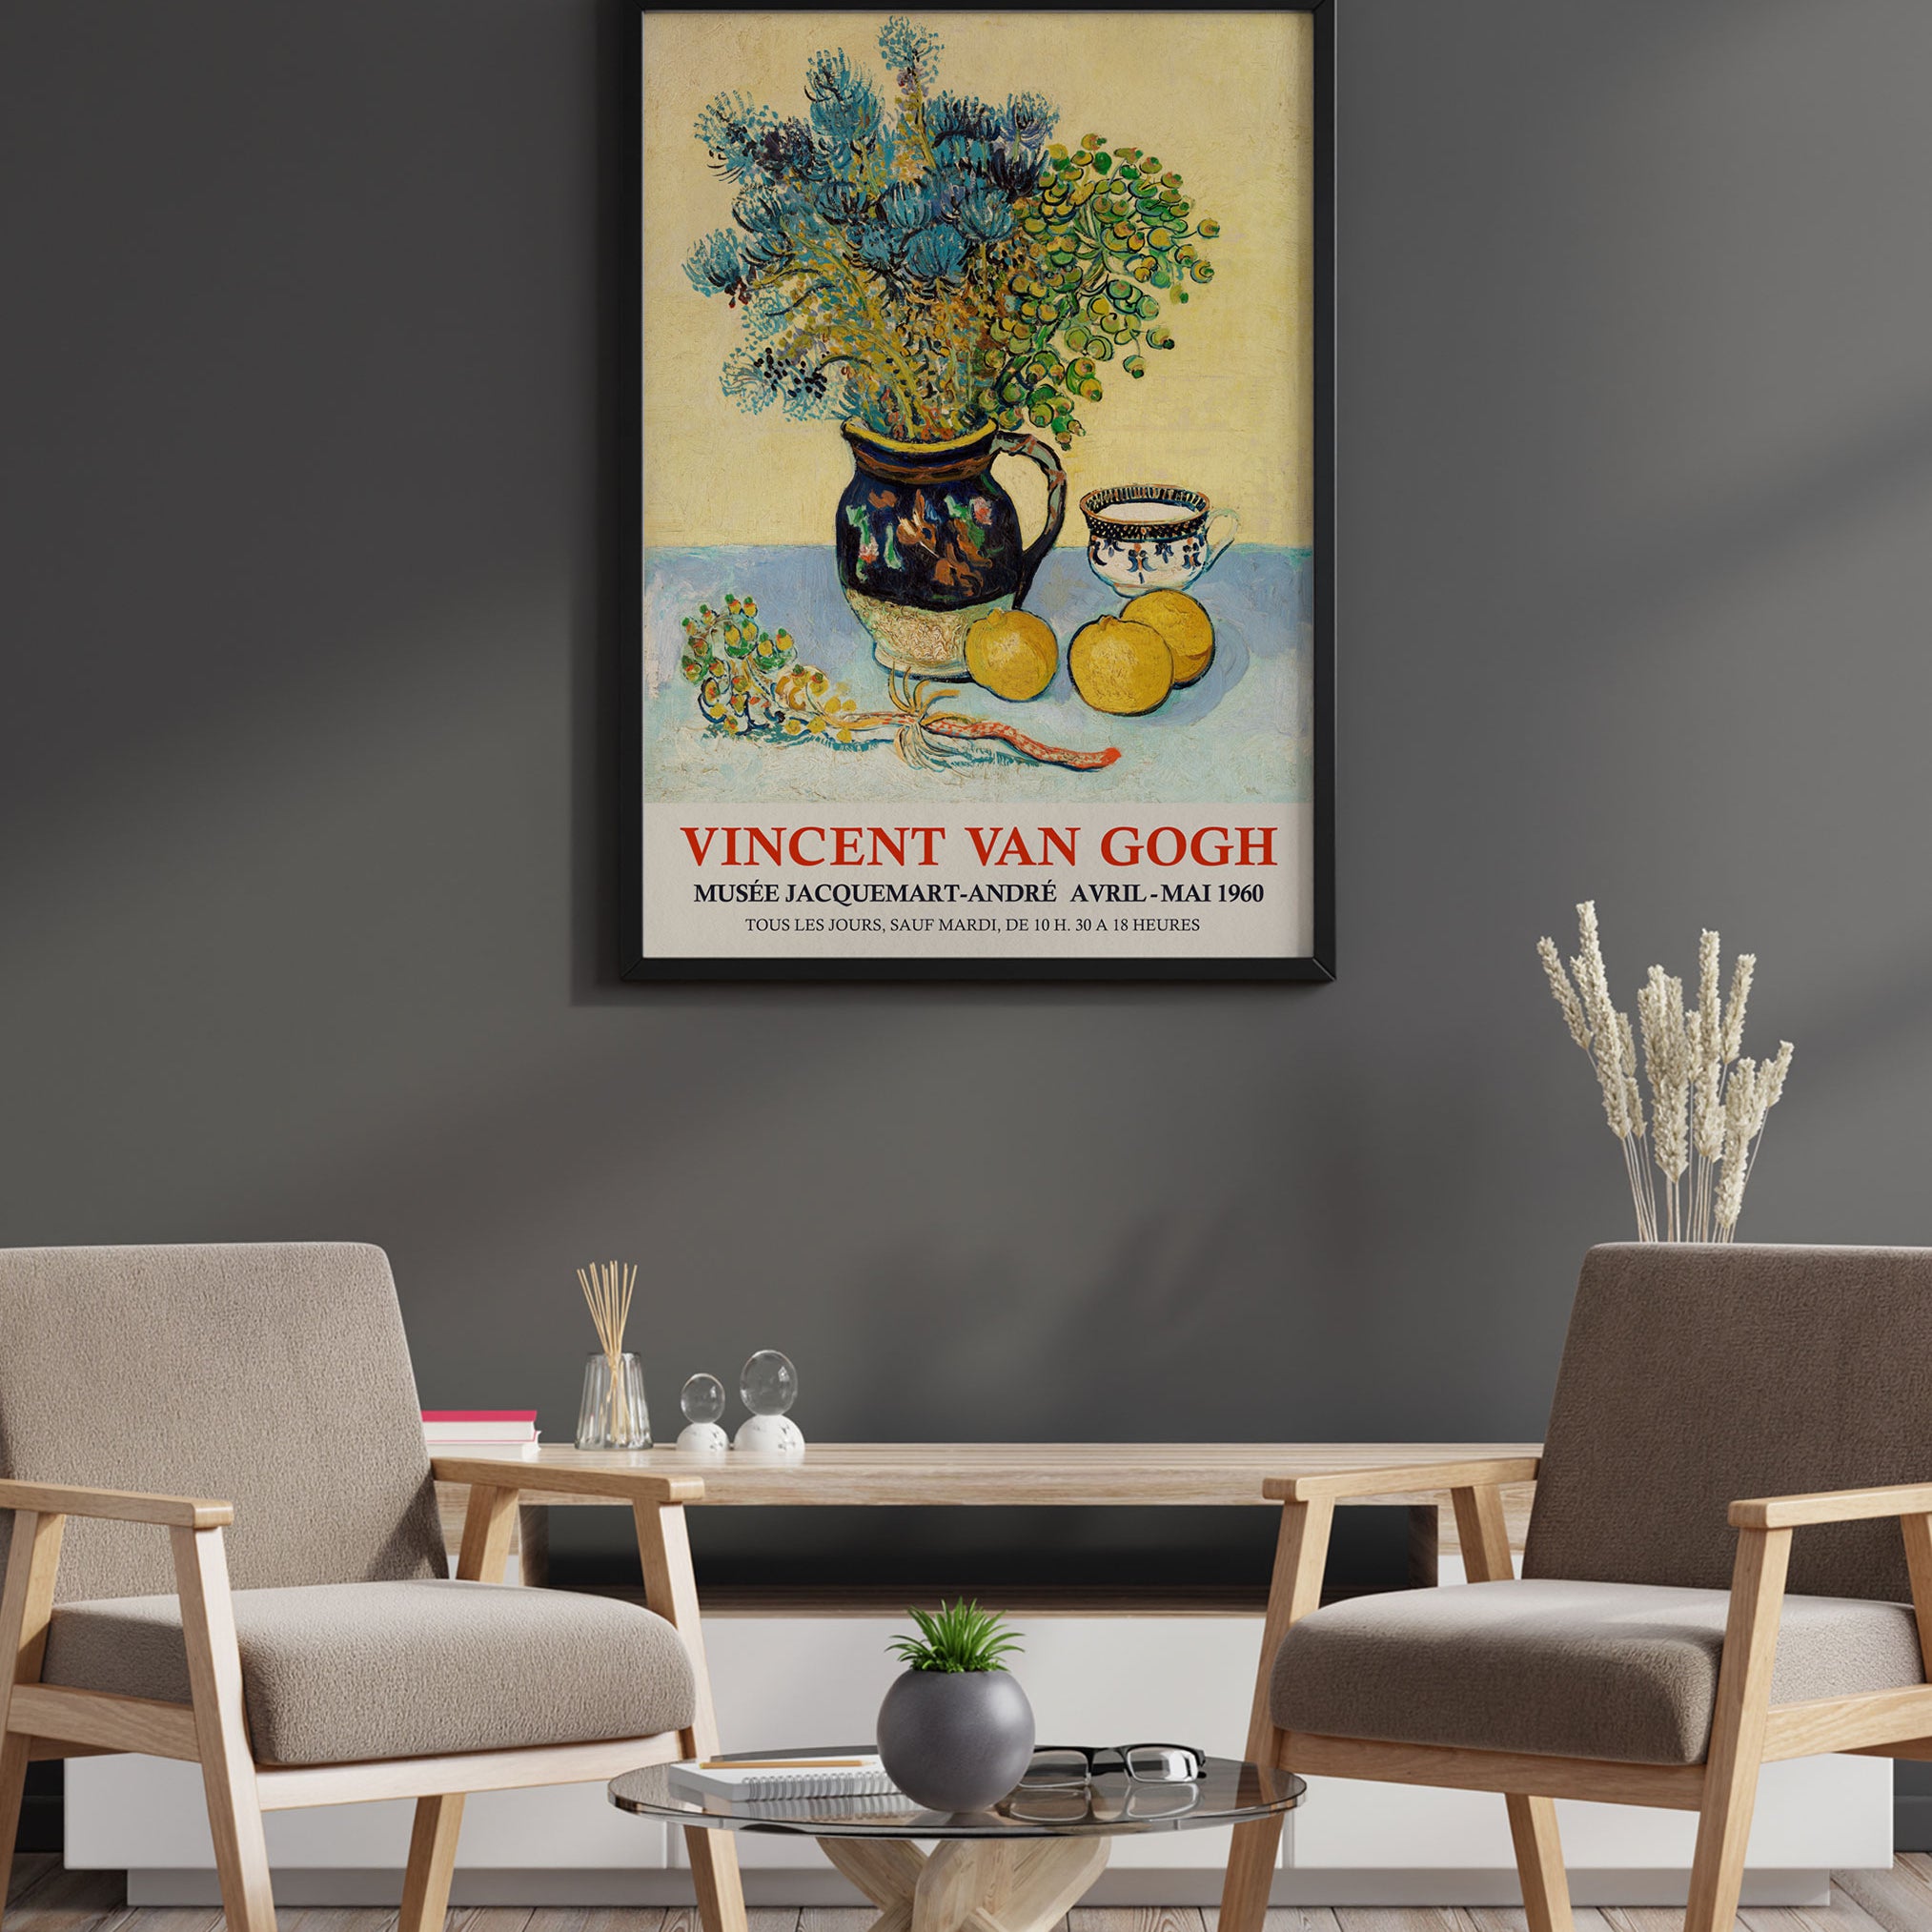 Vincent van Gogh Exhibition Poster - Still Life